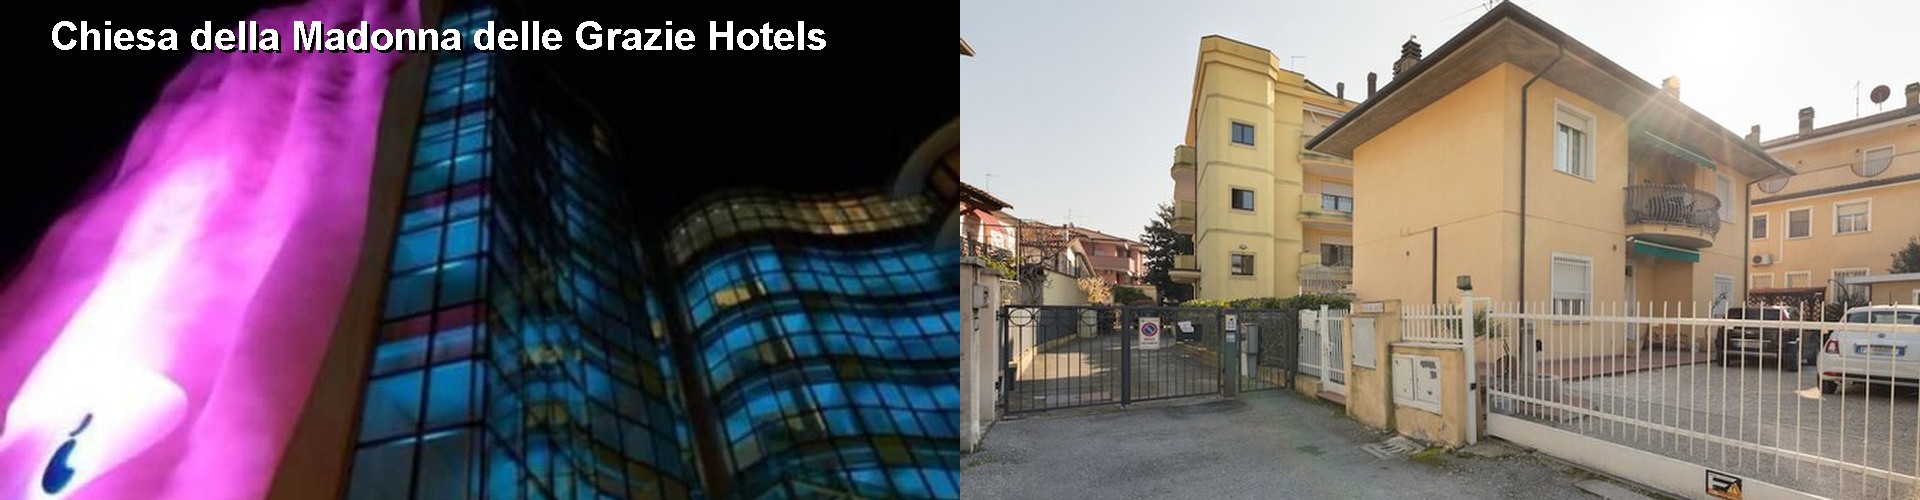 5 Best Hotels near Chiesa della Madonna delle Grazie